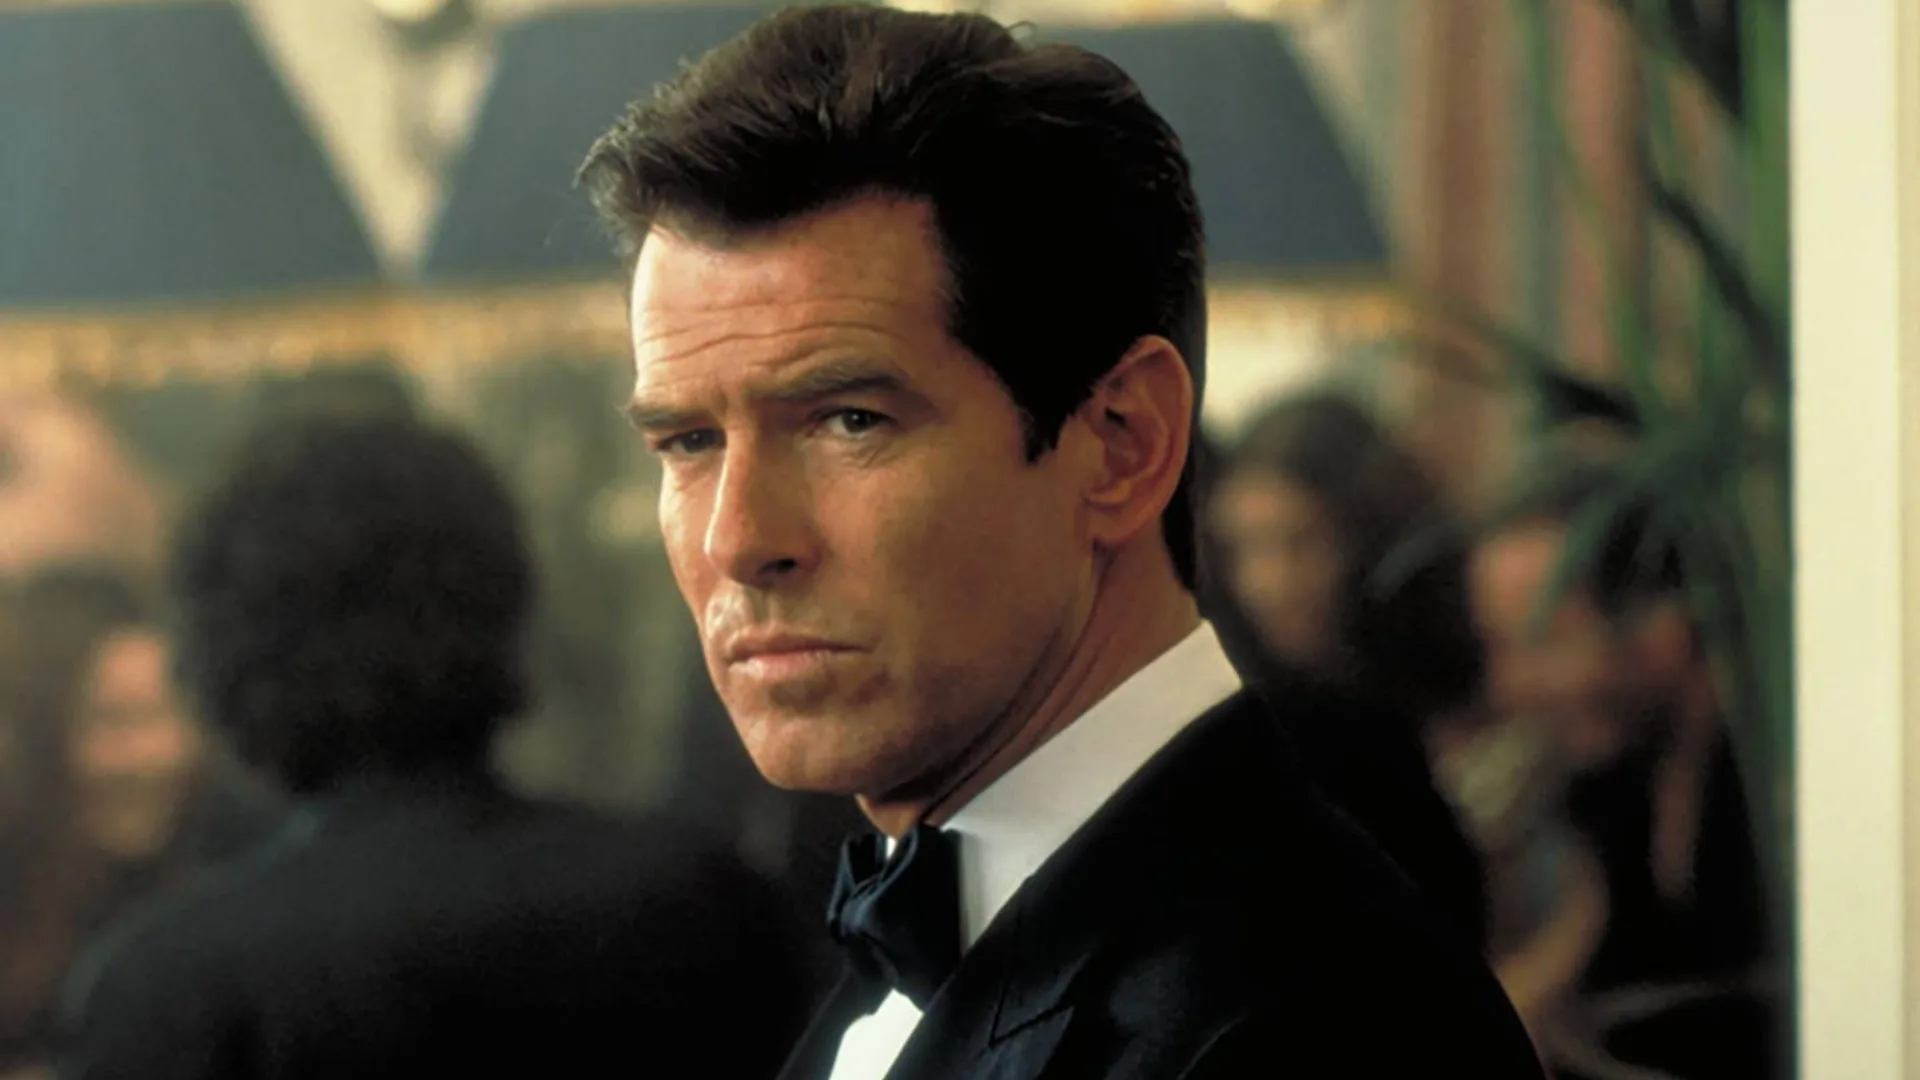 Pierce Brosnan actores agente 007 